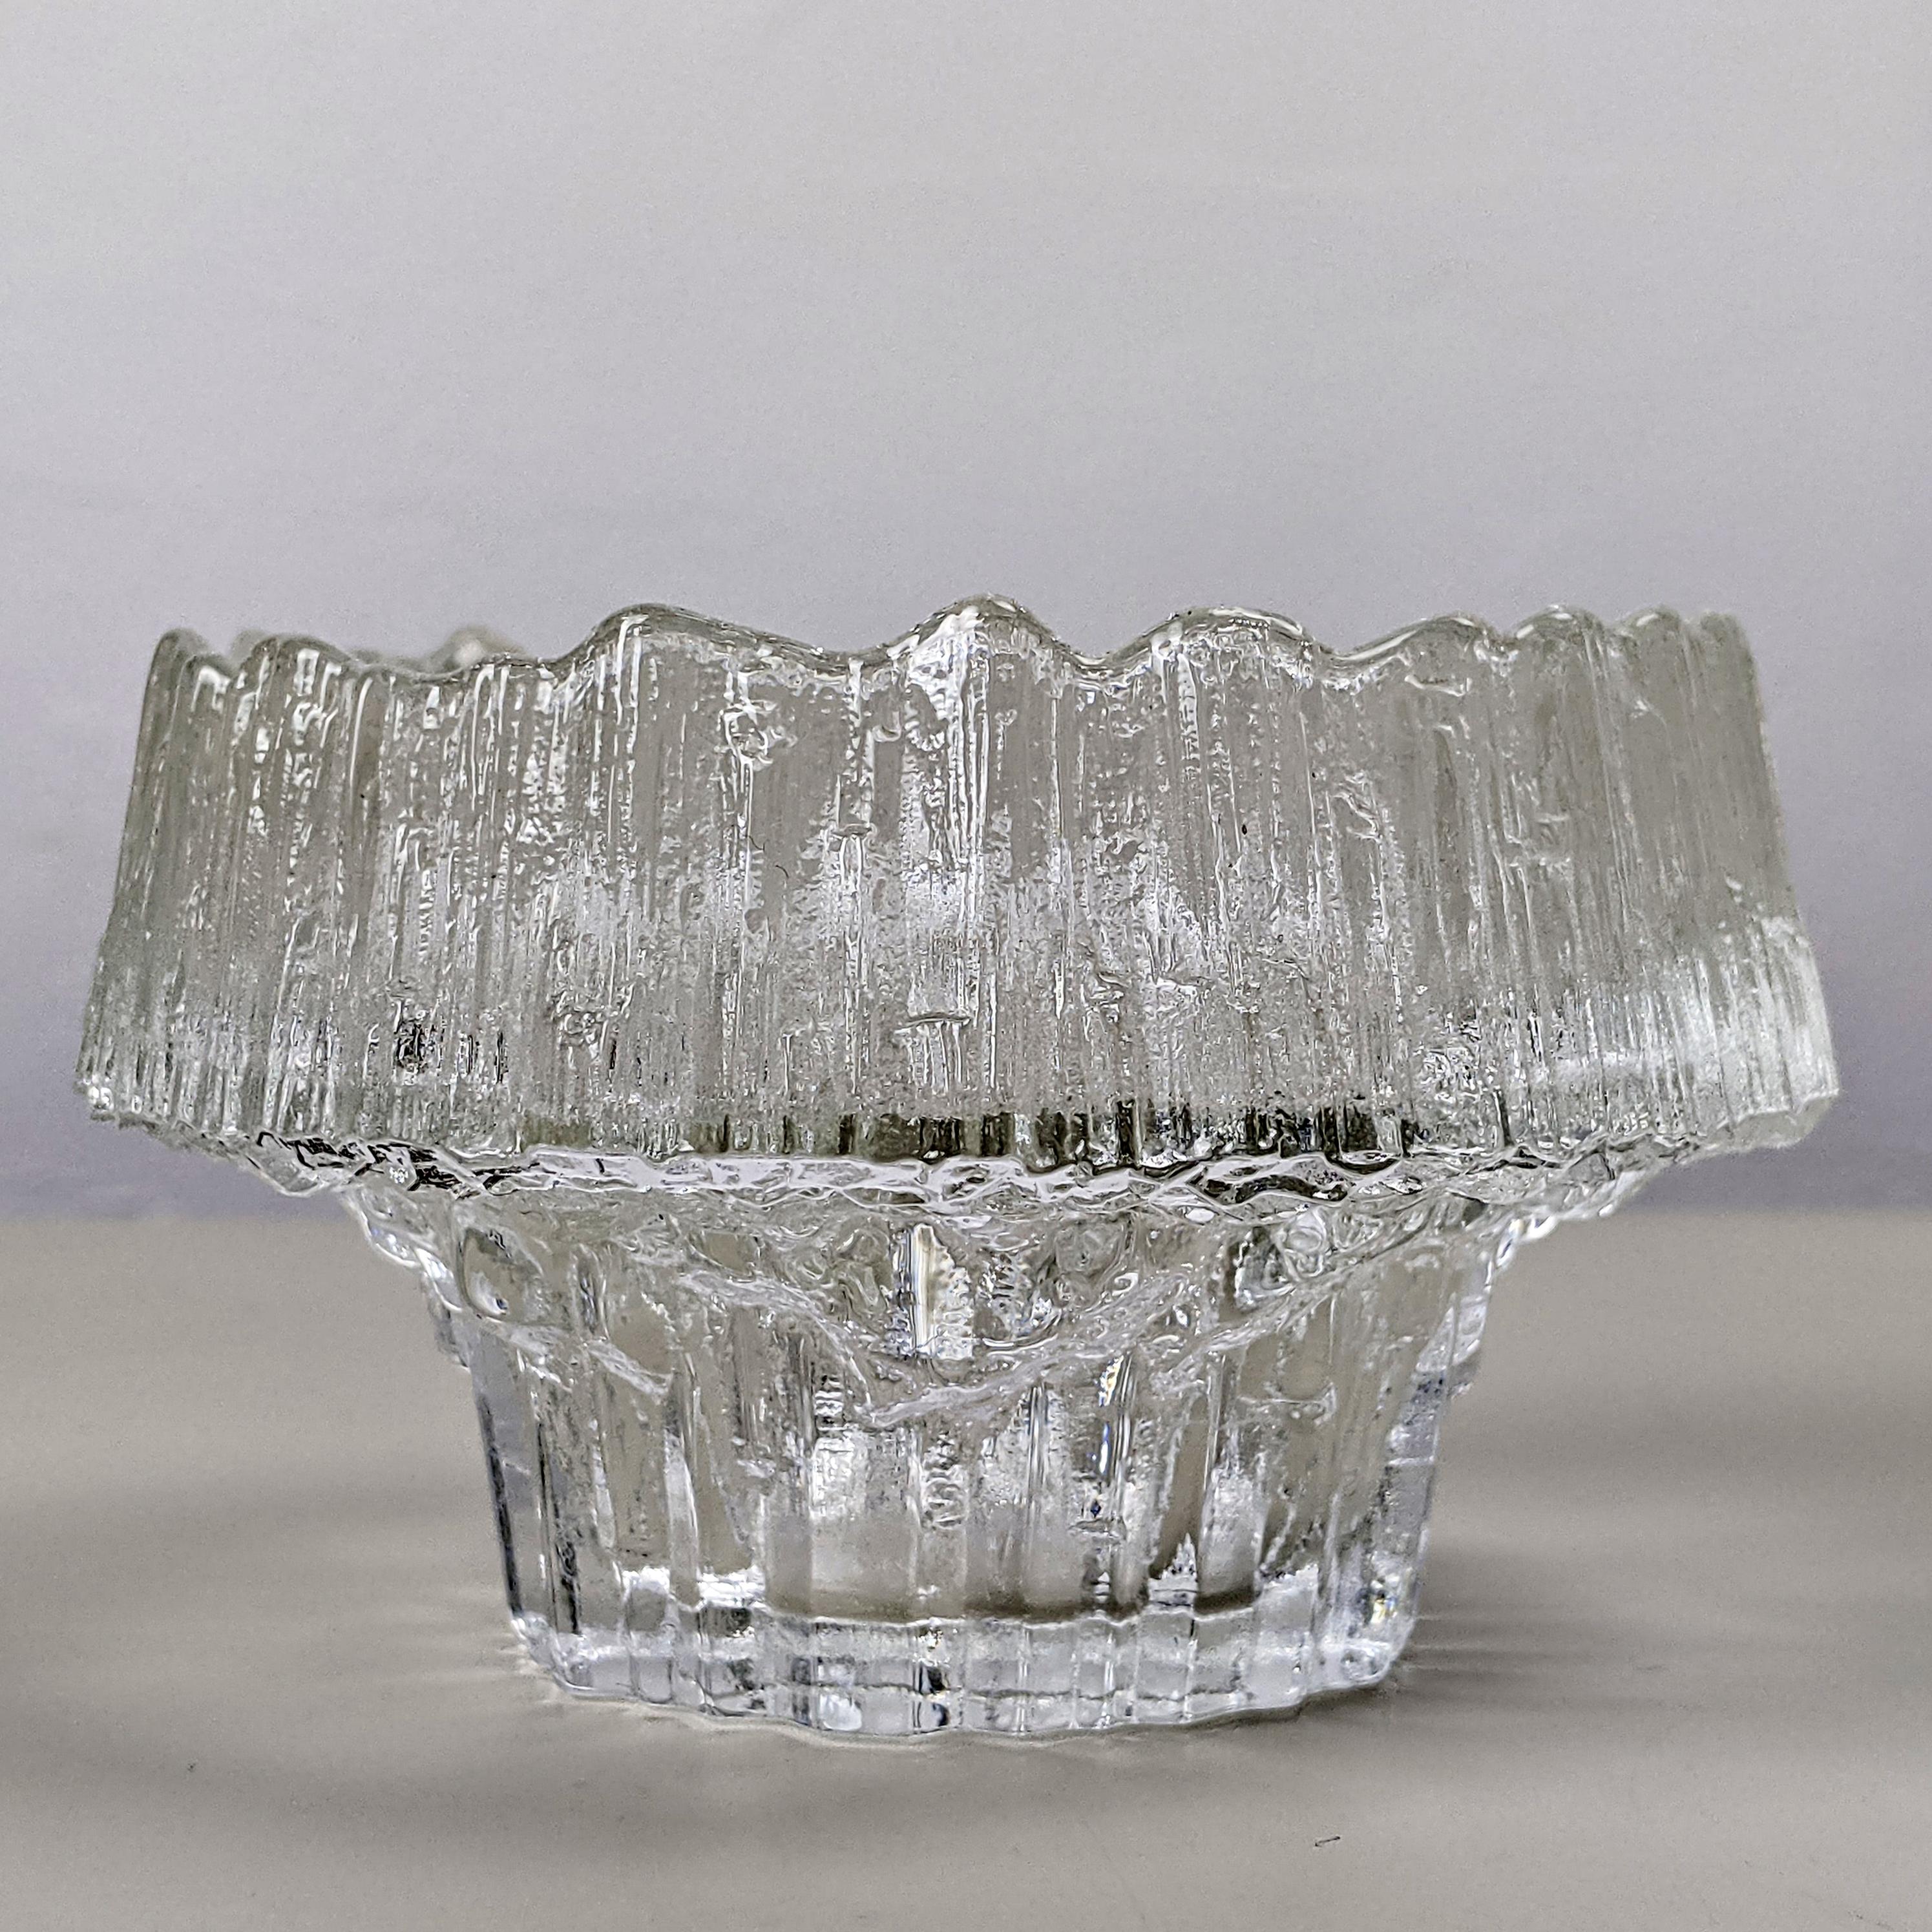 Tapio Wirkkala für Iittala, um 1970
Kerze 'Stellaria' Teelichthalter

Klar strukturiertes Glas
Ausgezeichneter Zustand

Abmessungen, ca...:
Durchmesser 10,5 cm, Höhe 6,5 cm, Gewicht 295 g.